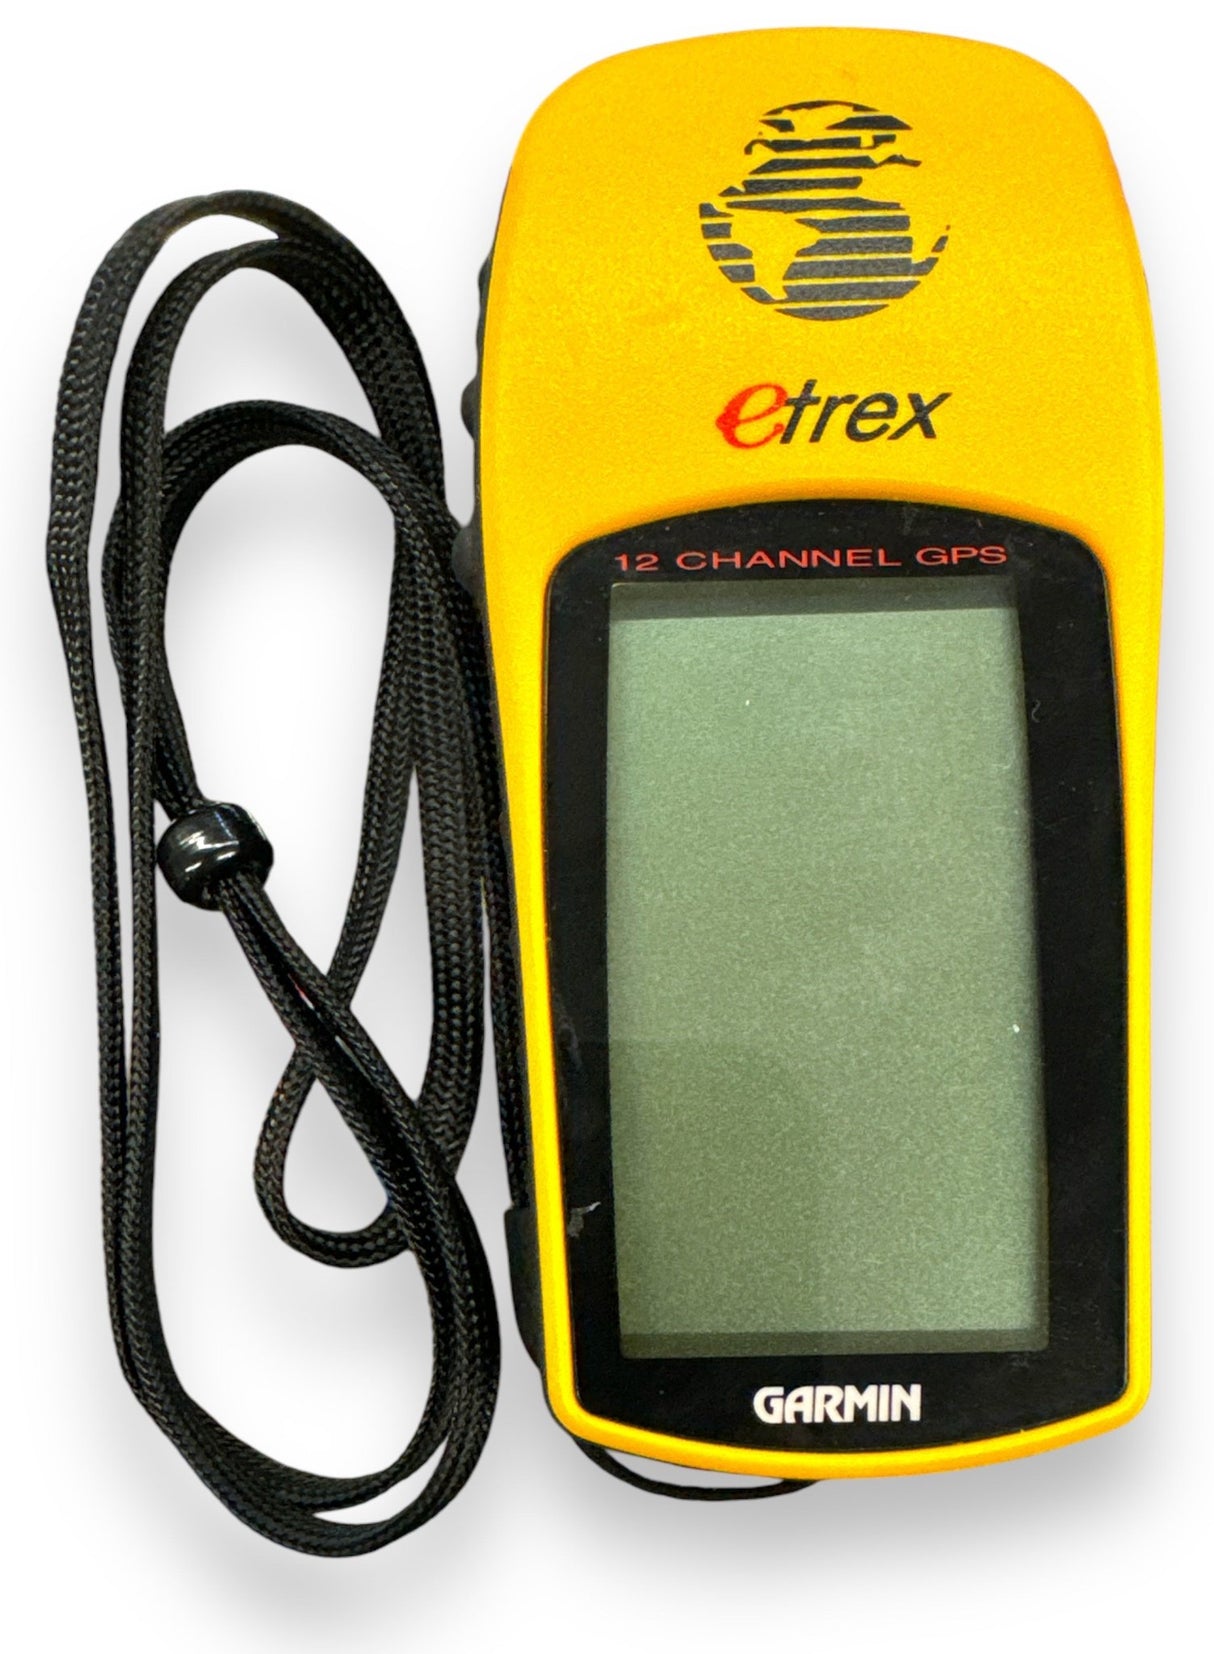 GARMIN GPS SYSTEM ETREX 12 CHANN - Idaho Pawn & Gold